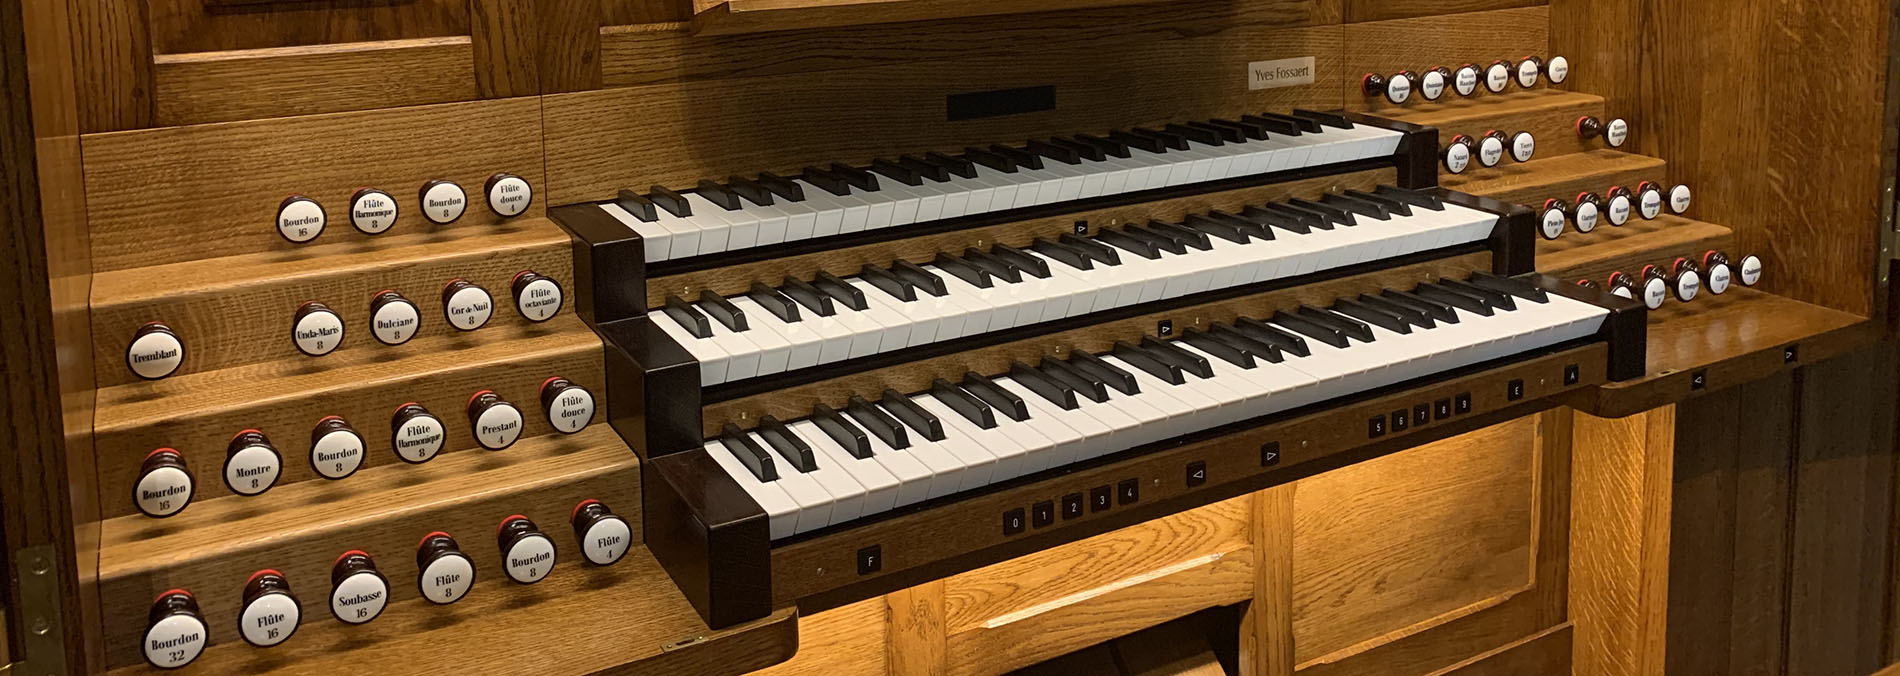 Les claviers de l’orgue